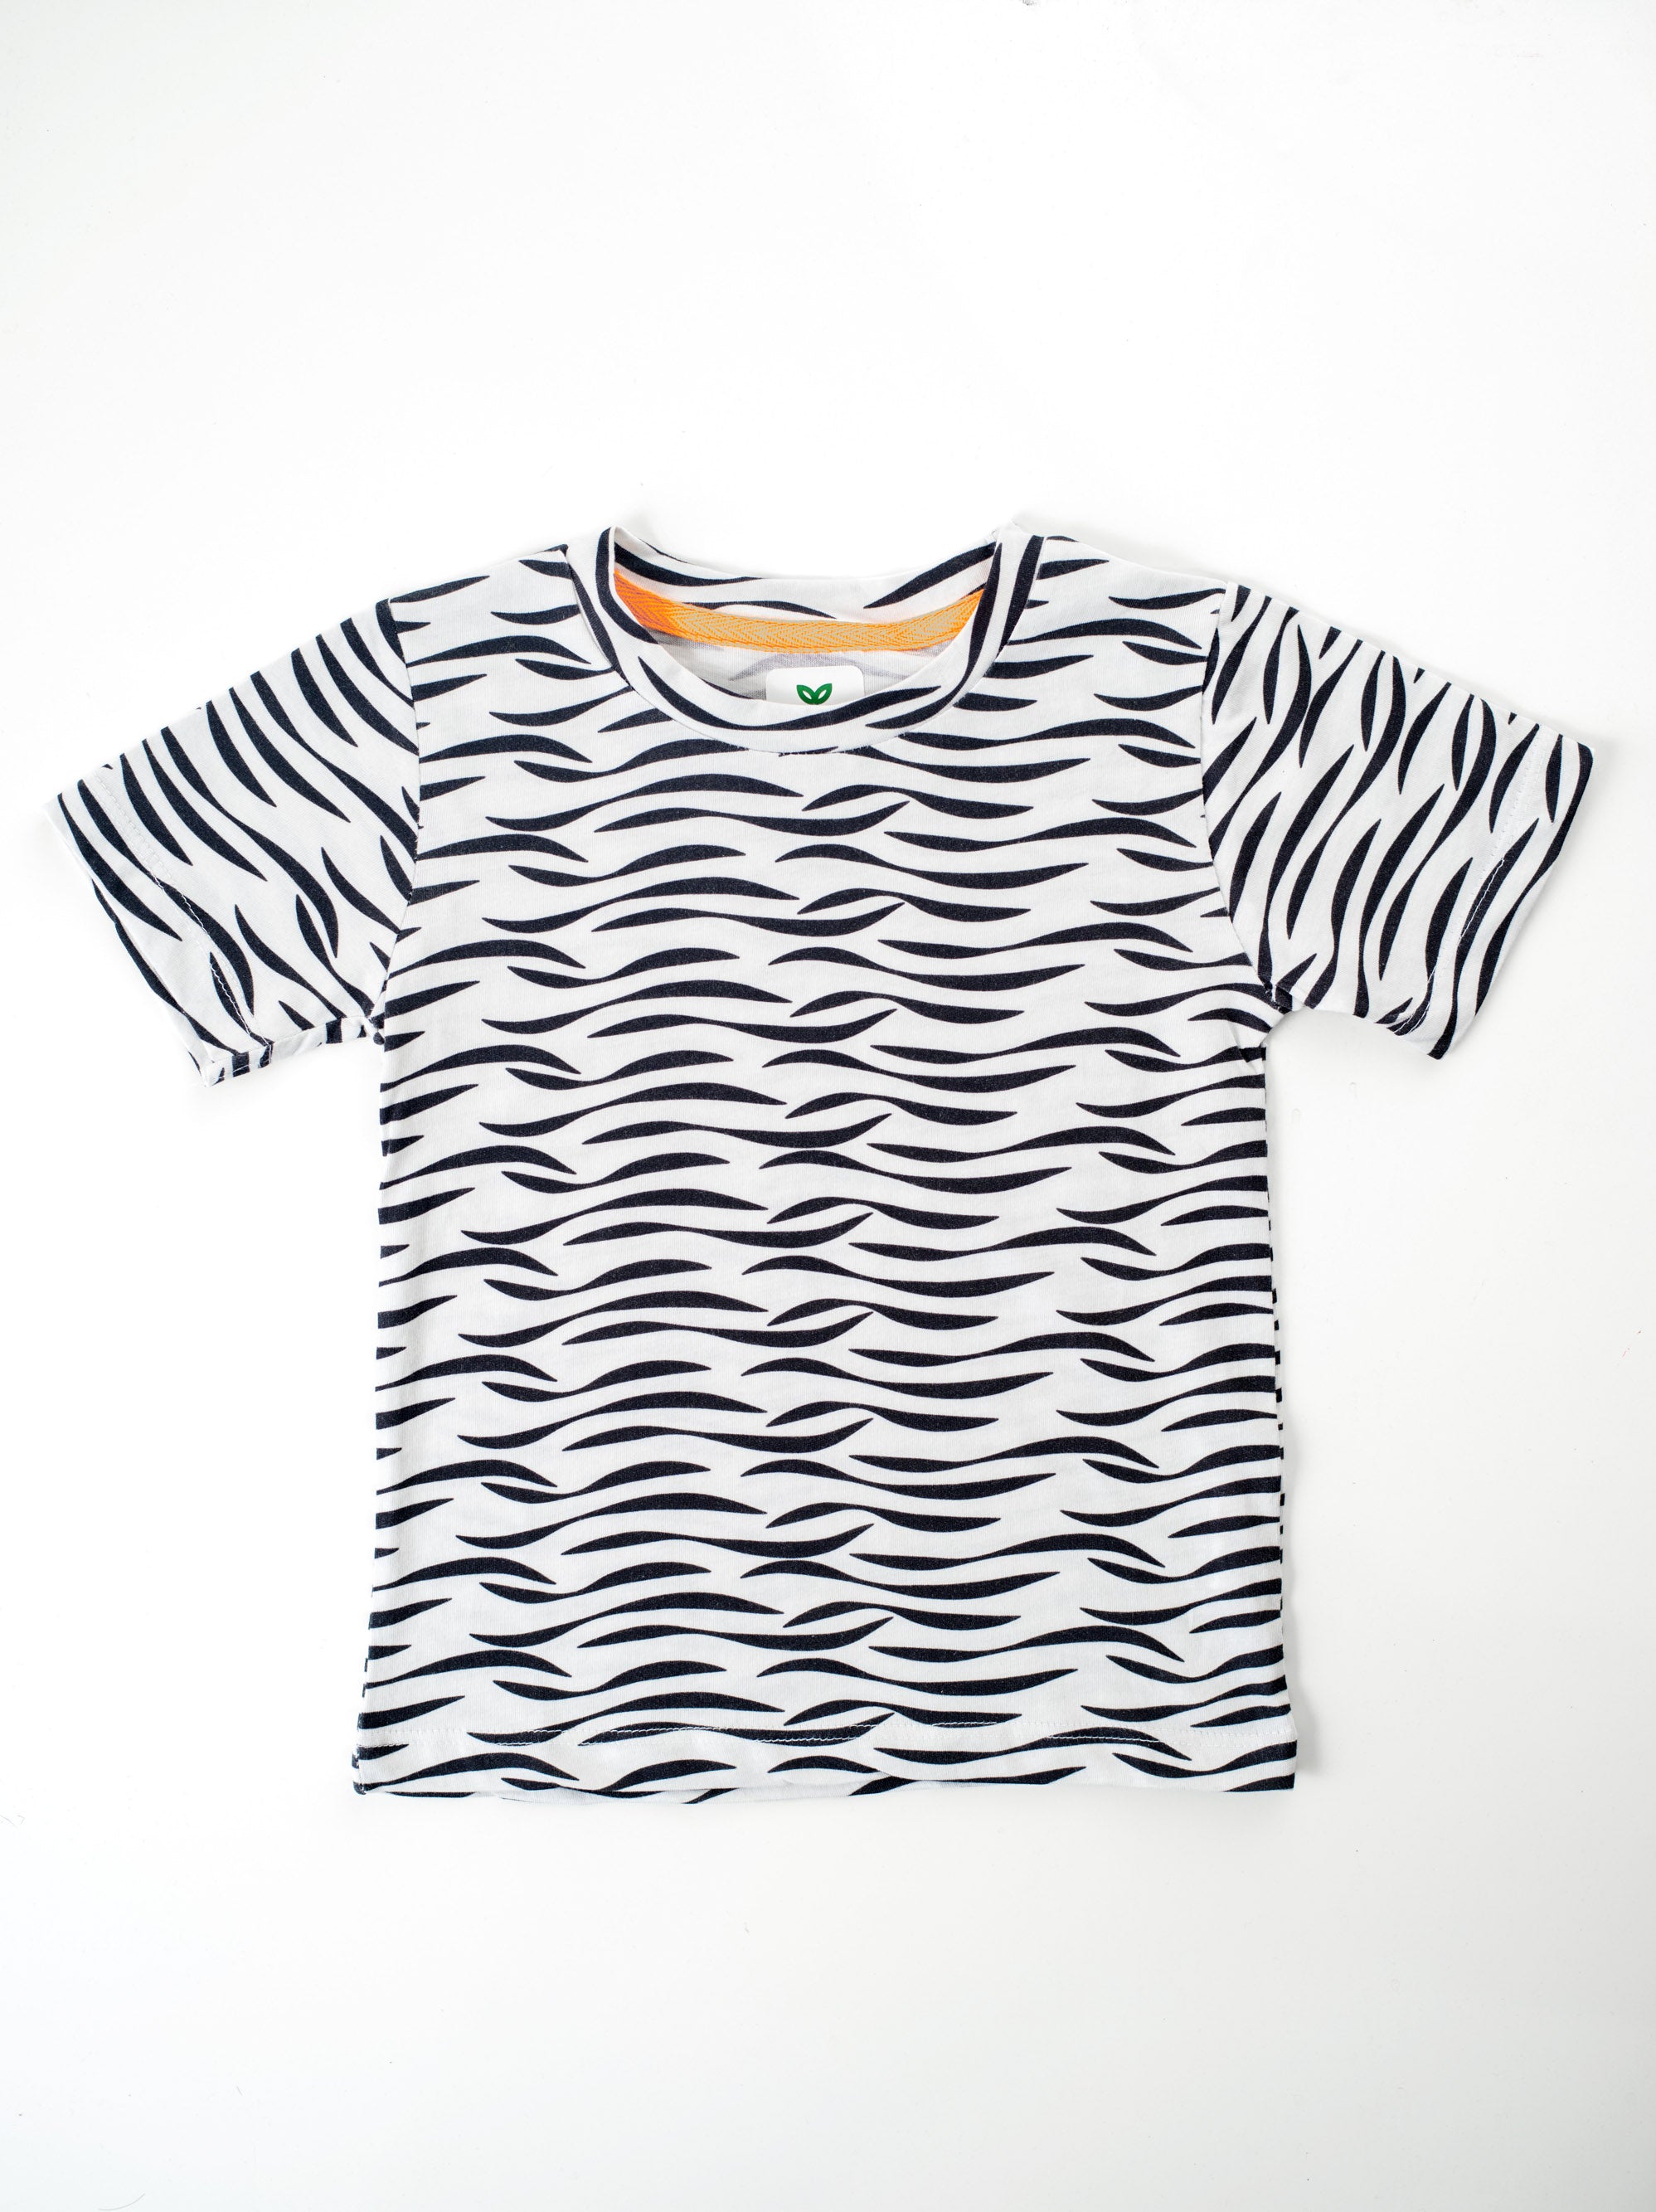 Waves- Printed T-Shirt